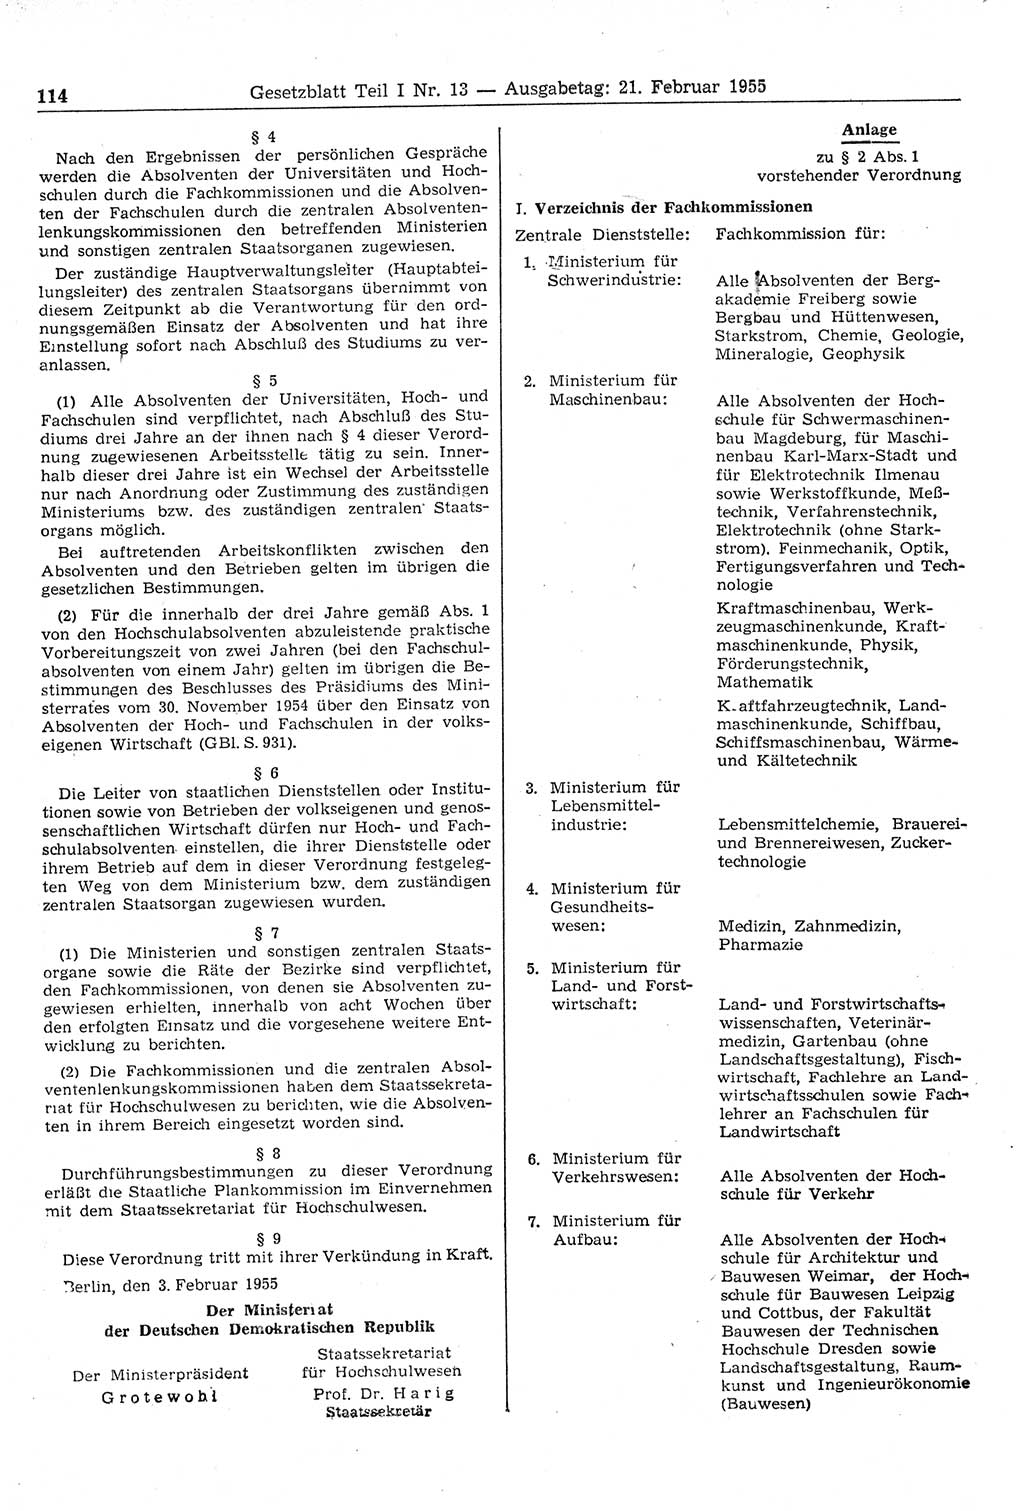 Gesetzblatt (GBl.) der Deutschen Demokratischen Republik (DDR) Teil Ⅰ 1955, Seite 114 (GBl. DDR Ⅰ 1955, S. 114)